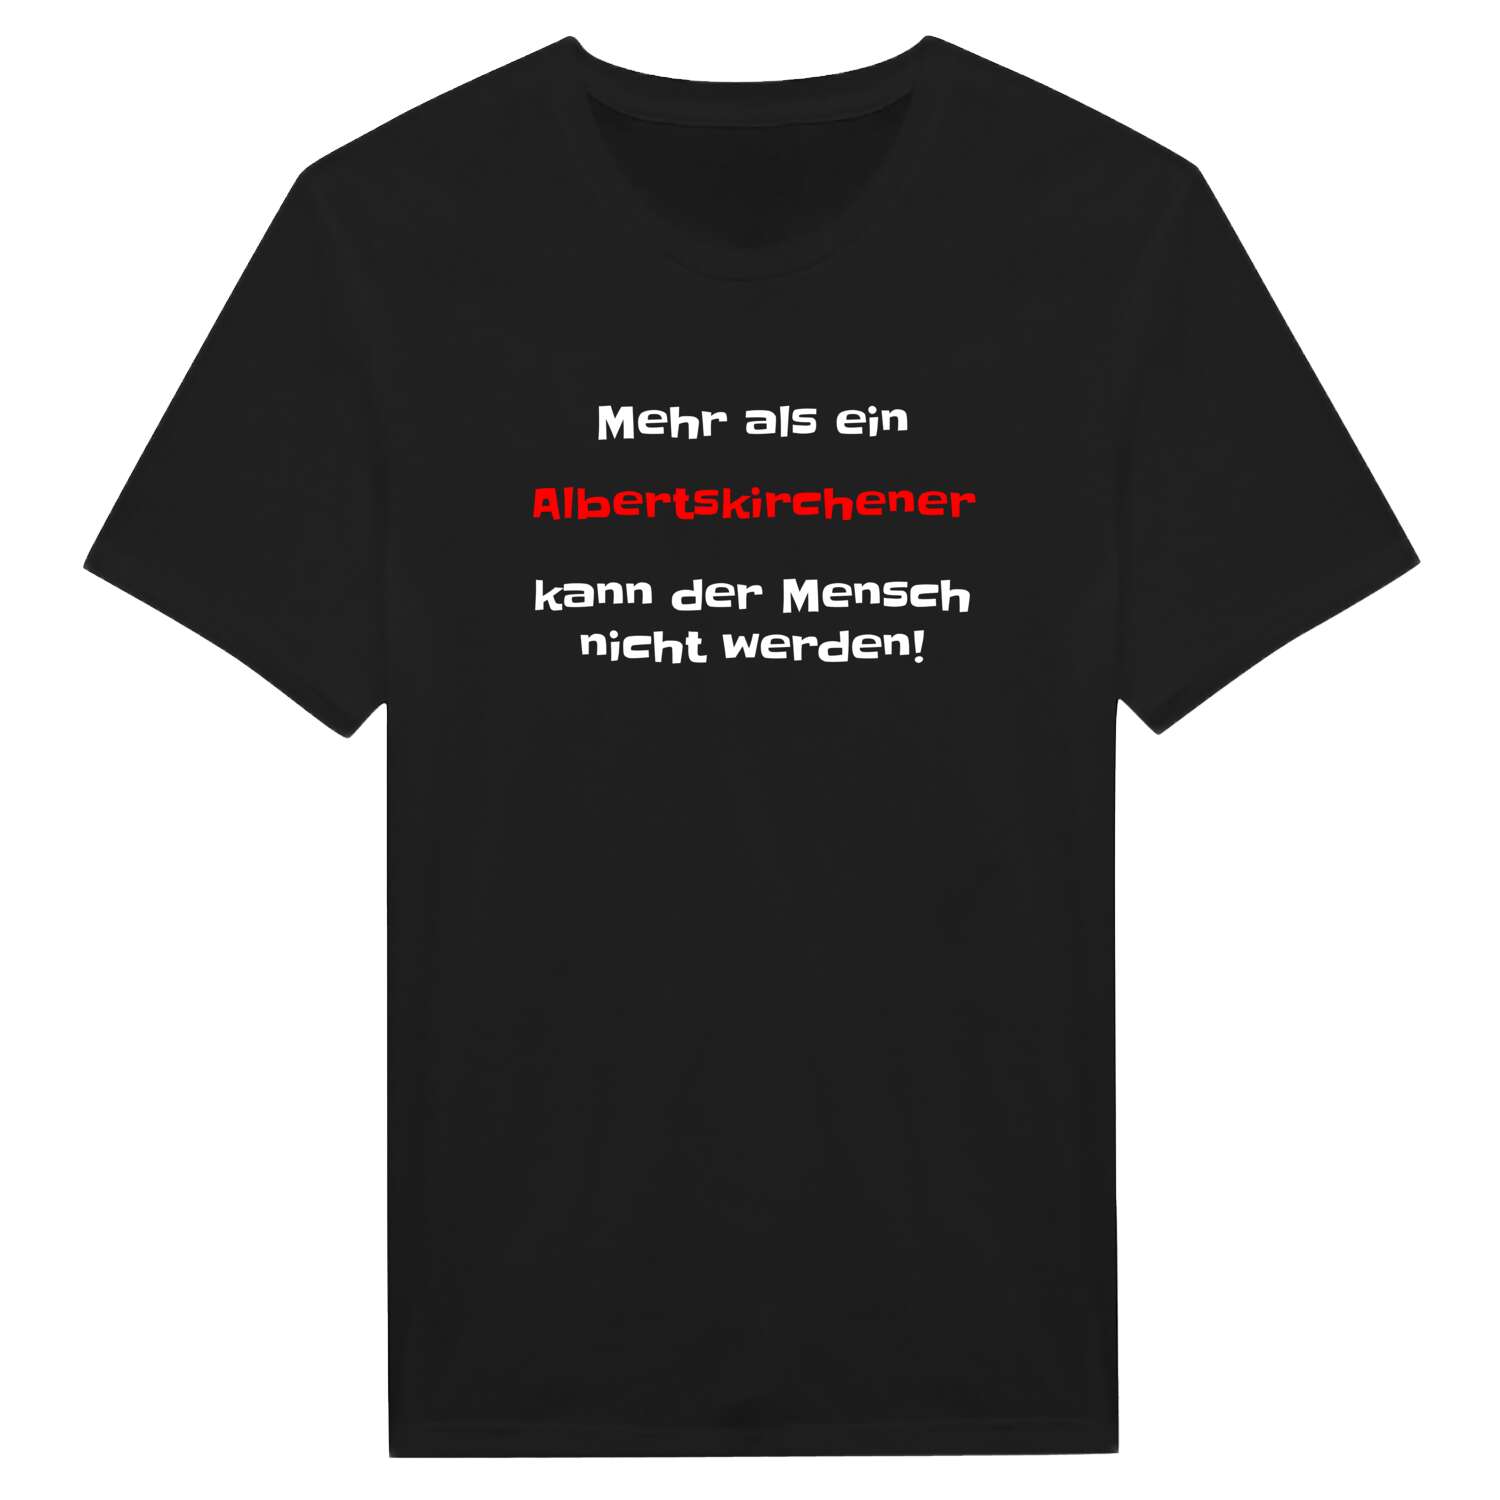 Albertskirchen T-Shirt »Mehr als ein«